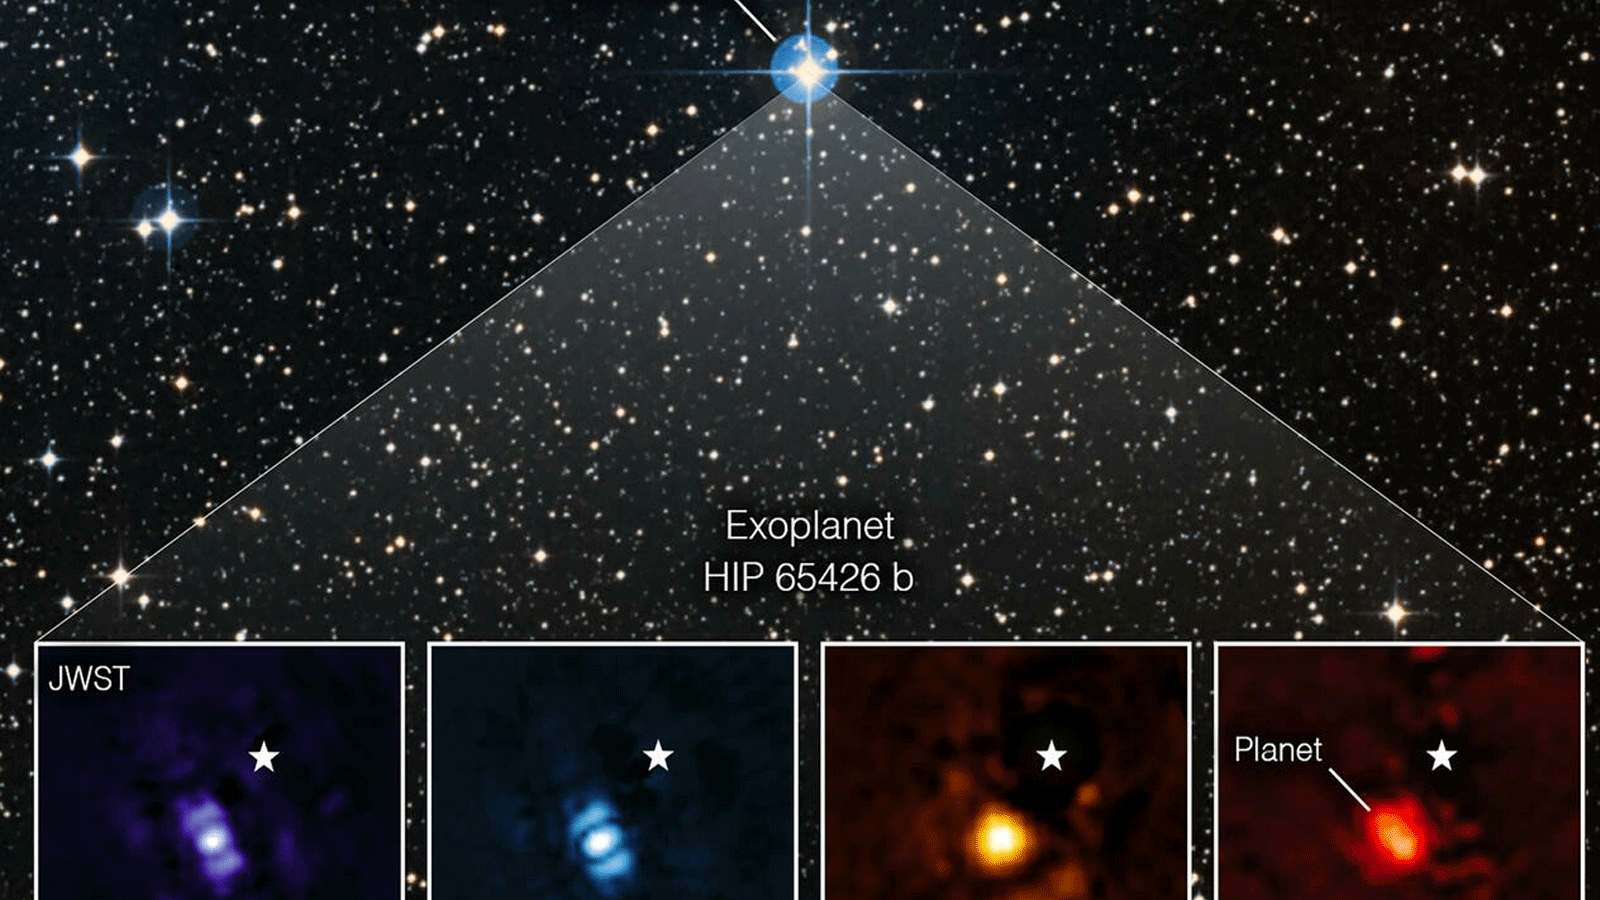 تلسكوب جيمس ويب الفضائي صورة مباشرة لكوكب خارج المجموعة الشمسية - تُظهر الصورة HIP 65426 b في نطاقات مختلفة من ضوء الأشعة تحت الحمراء